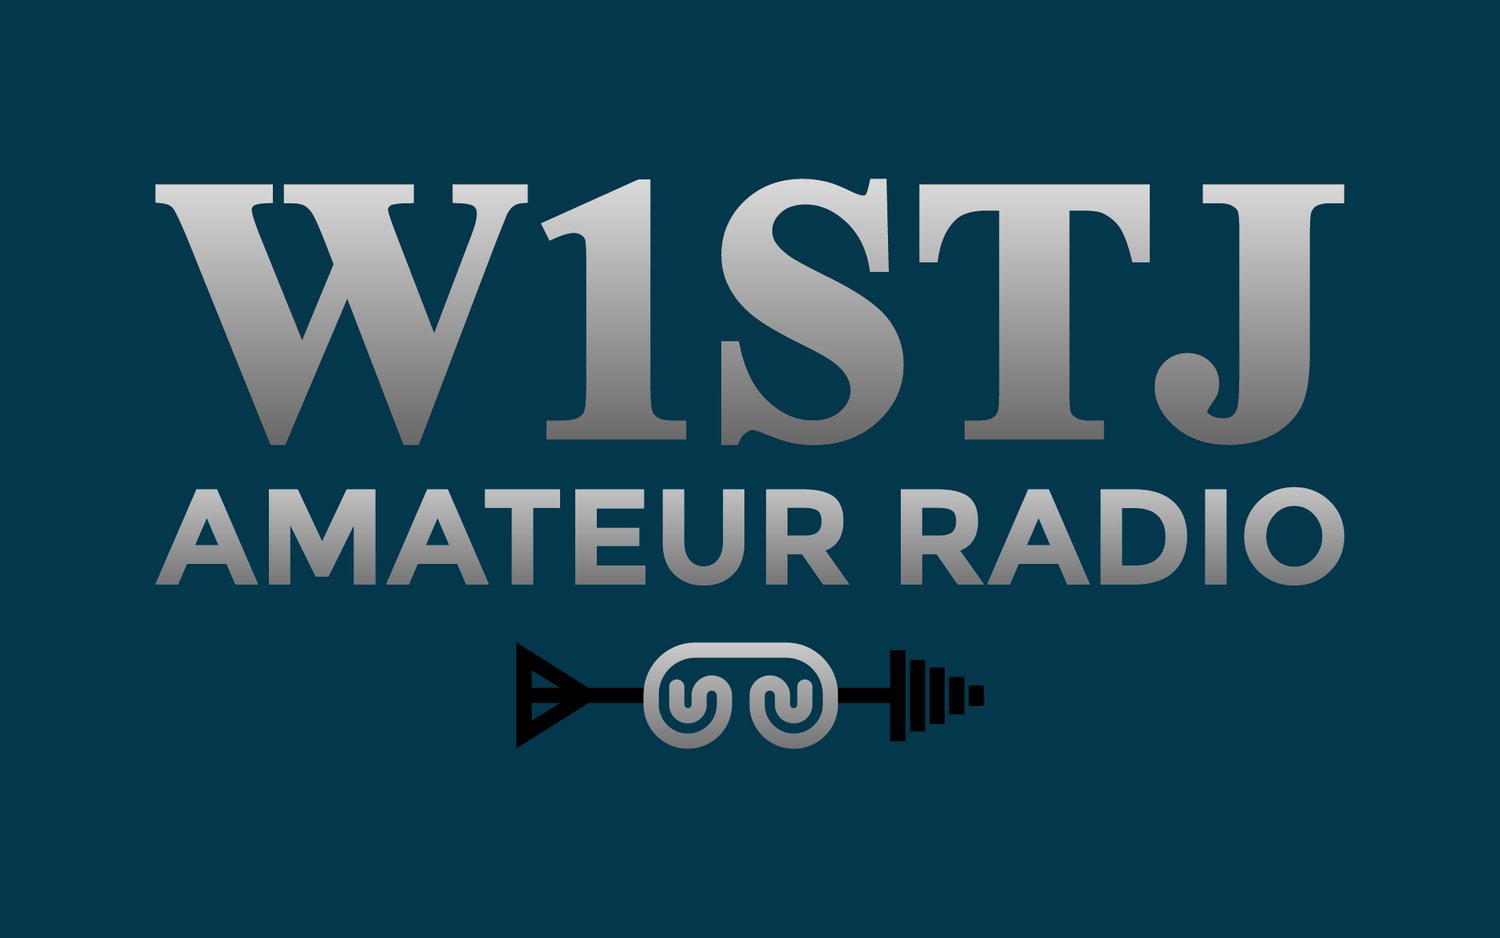 W1STJ Amateur Radio